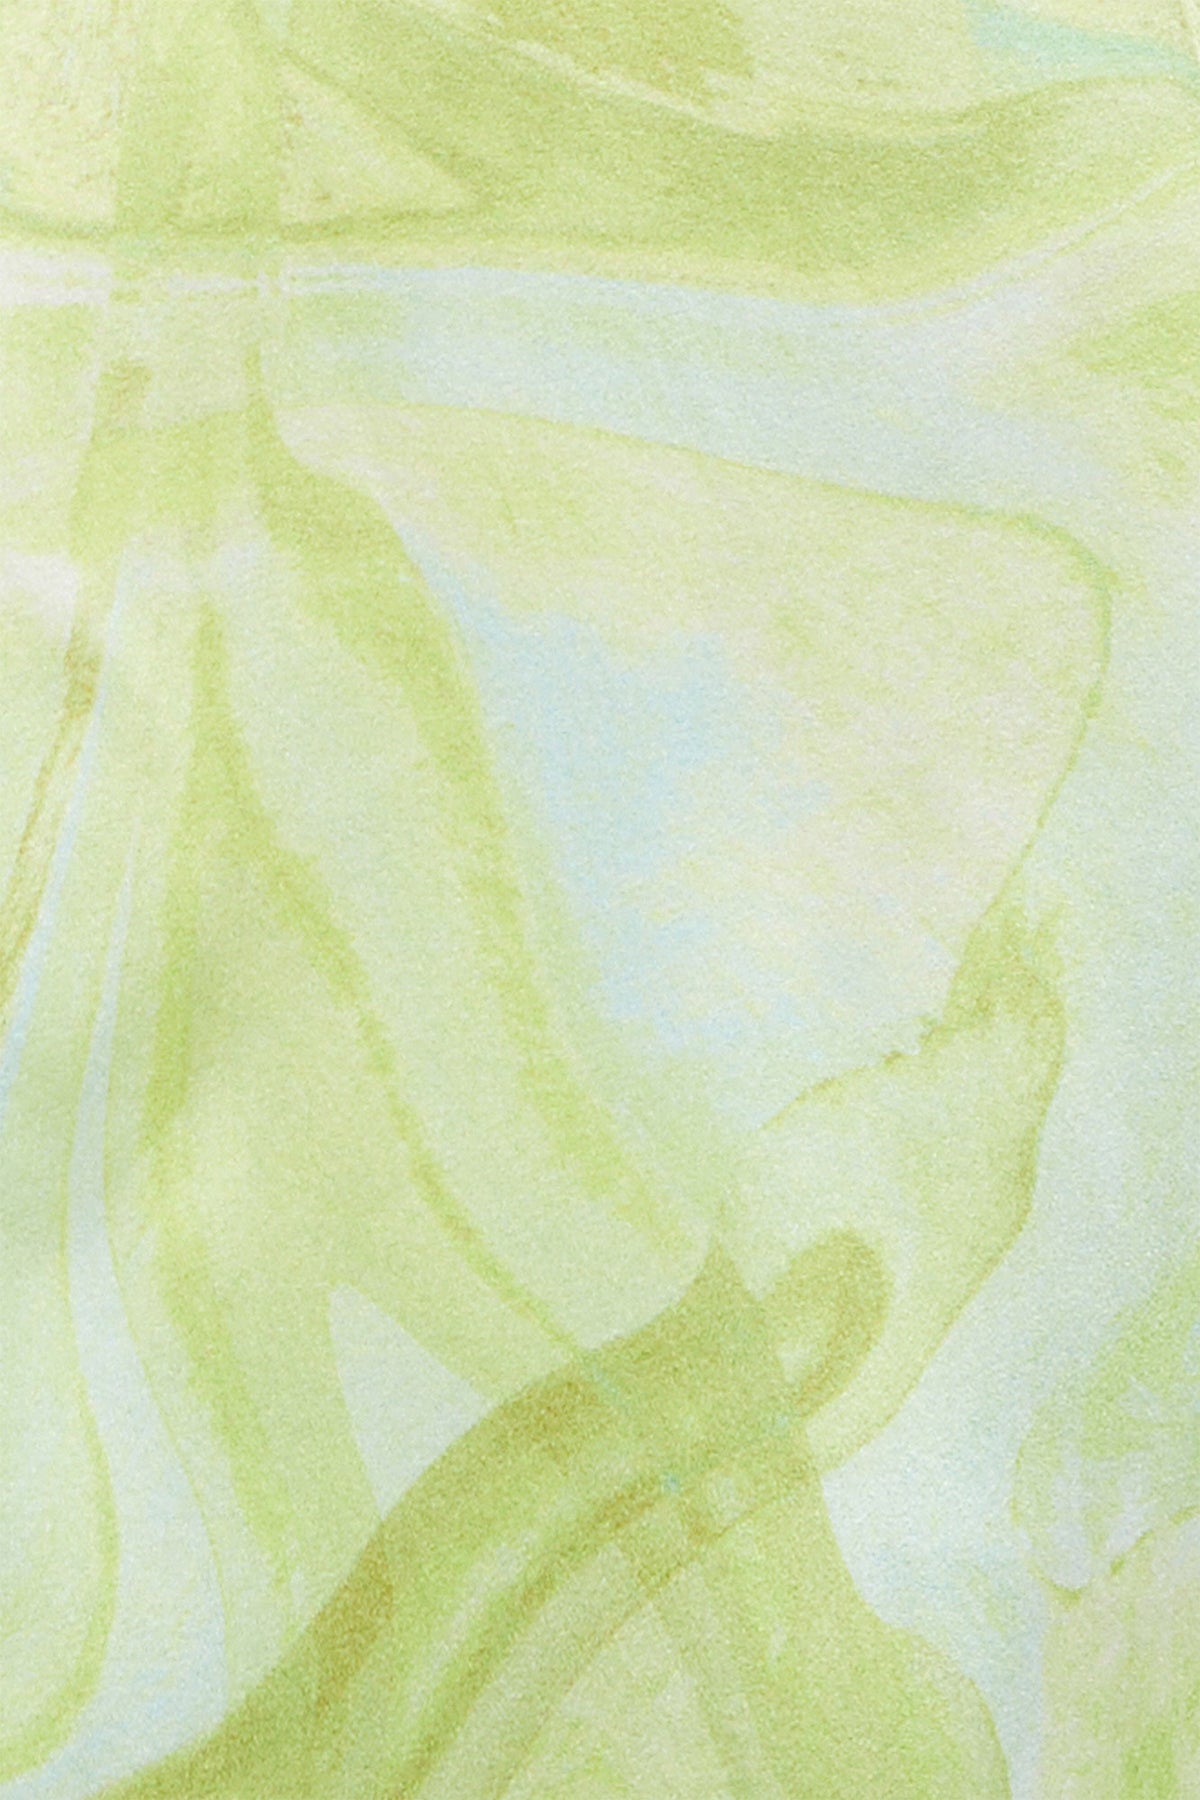 Gaia Maxi Dress in Lime Swirl Print from Ginia RTW